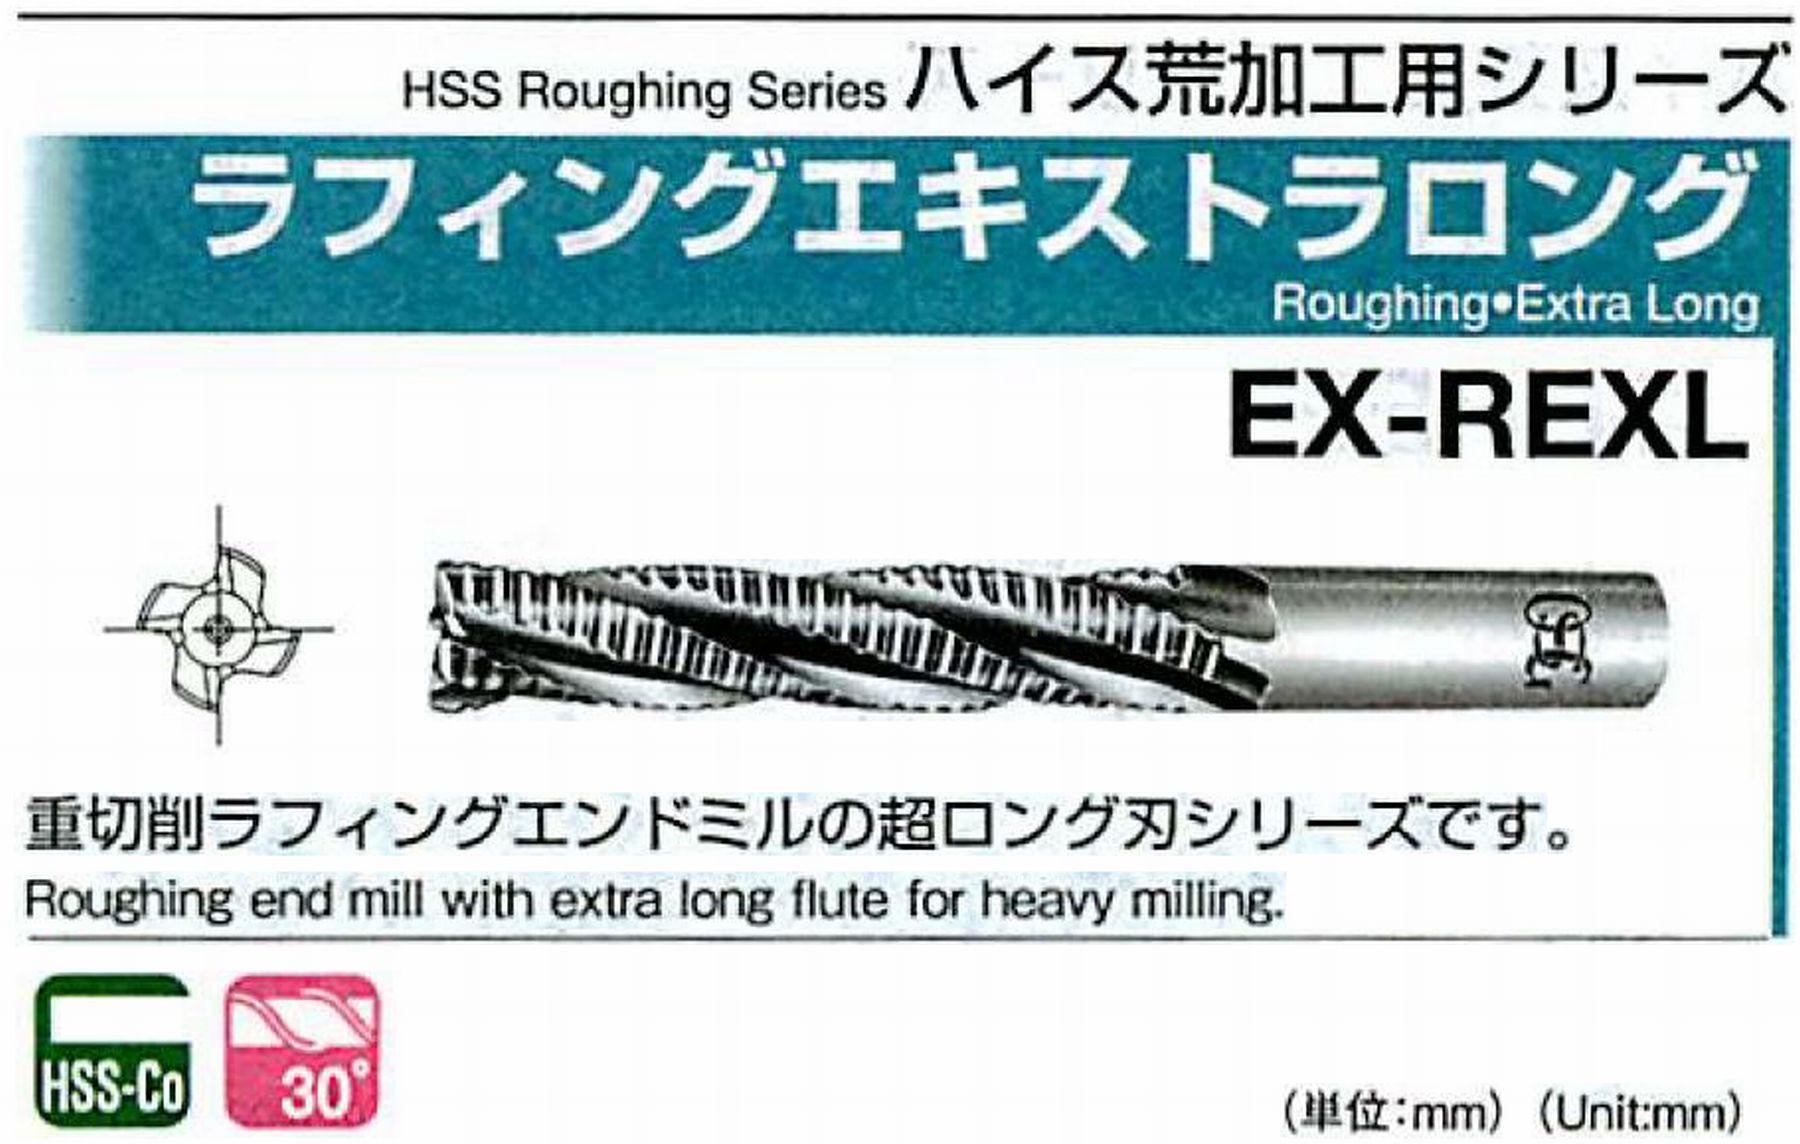 オーエスジー/OSG ラフィングエキストラ ロング EX-REXL 外径20 全長180 刃長106 シャンク径20mm 刃数4